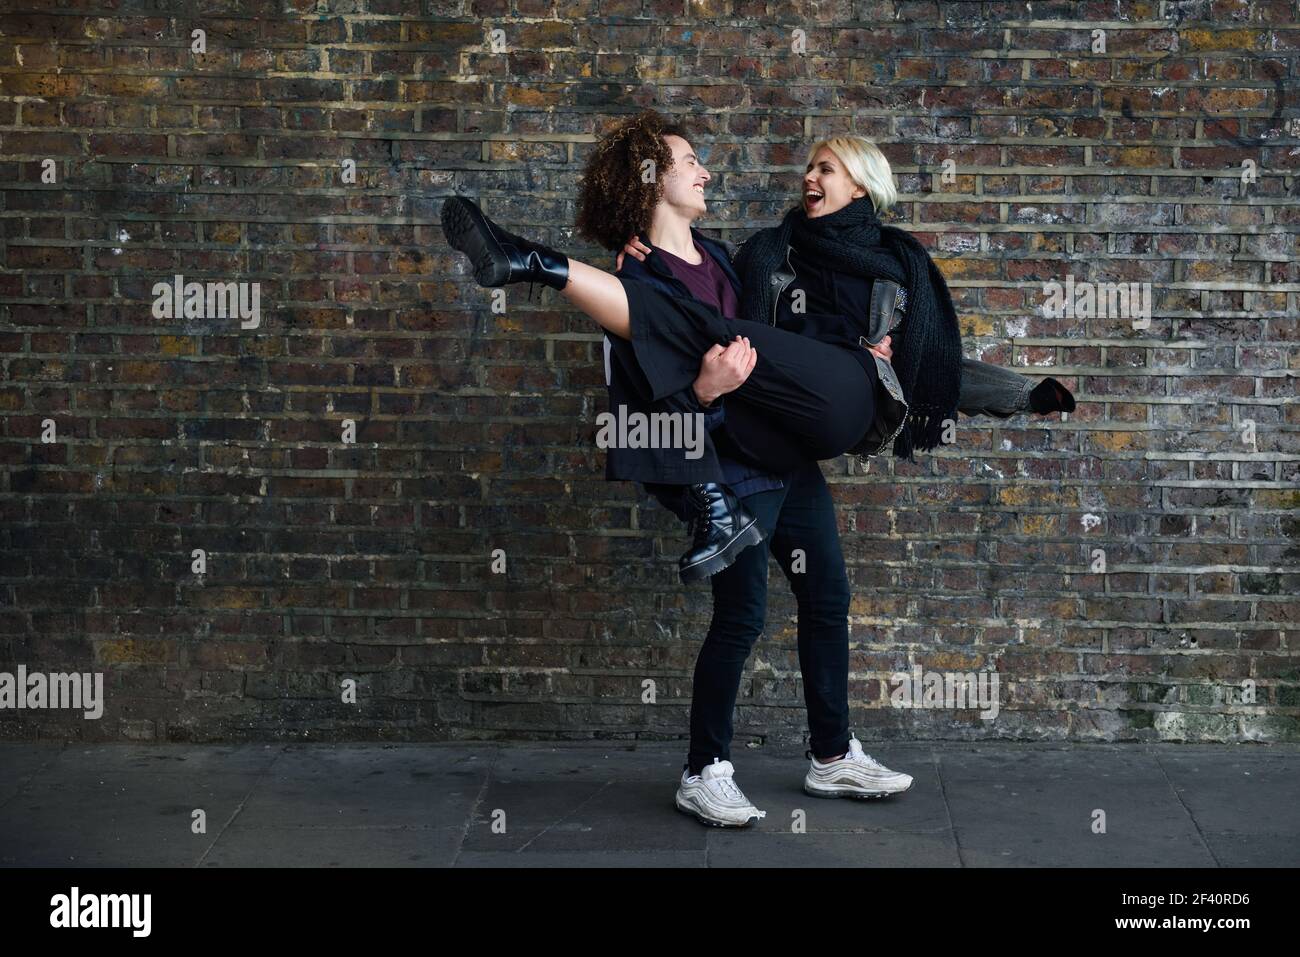 Homme tenant sa petite amie dans ses bras. Jeune couple appréciant la ville de Camden en face d'un mur de briques typique de Londres, Royaume-Uni. Homme tenant sa petite amie dans ses bras devant un mur de briques typique de Londres Banque D'Images